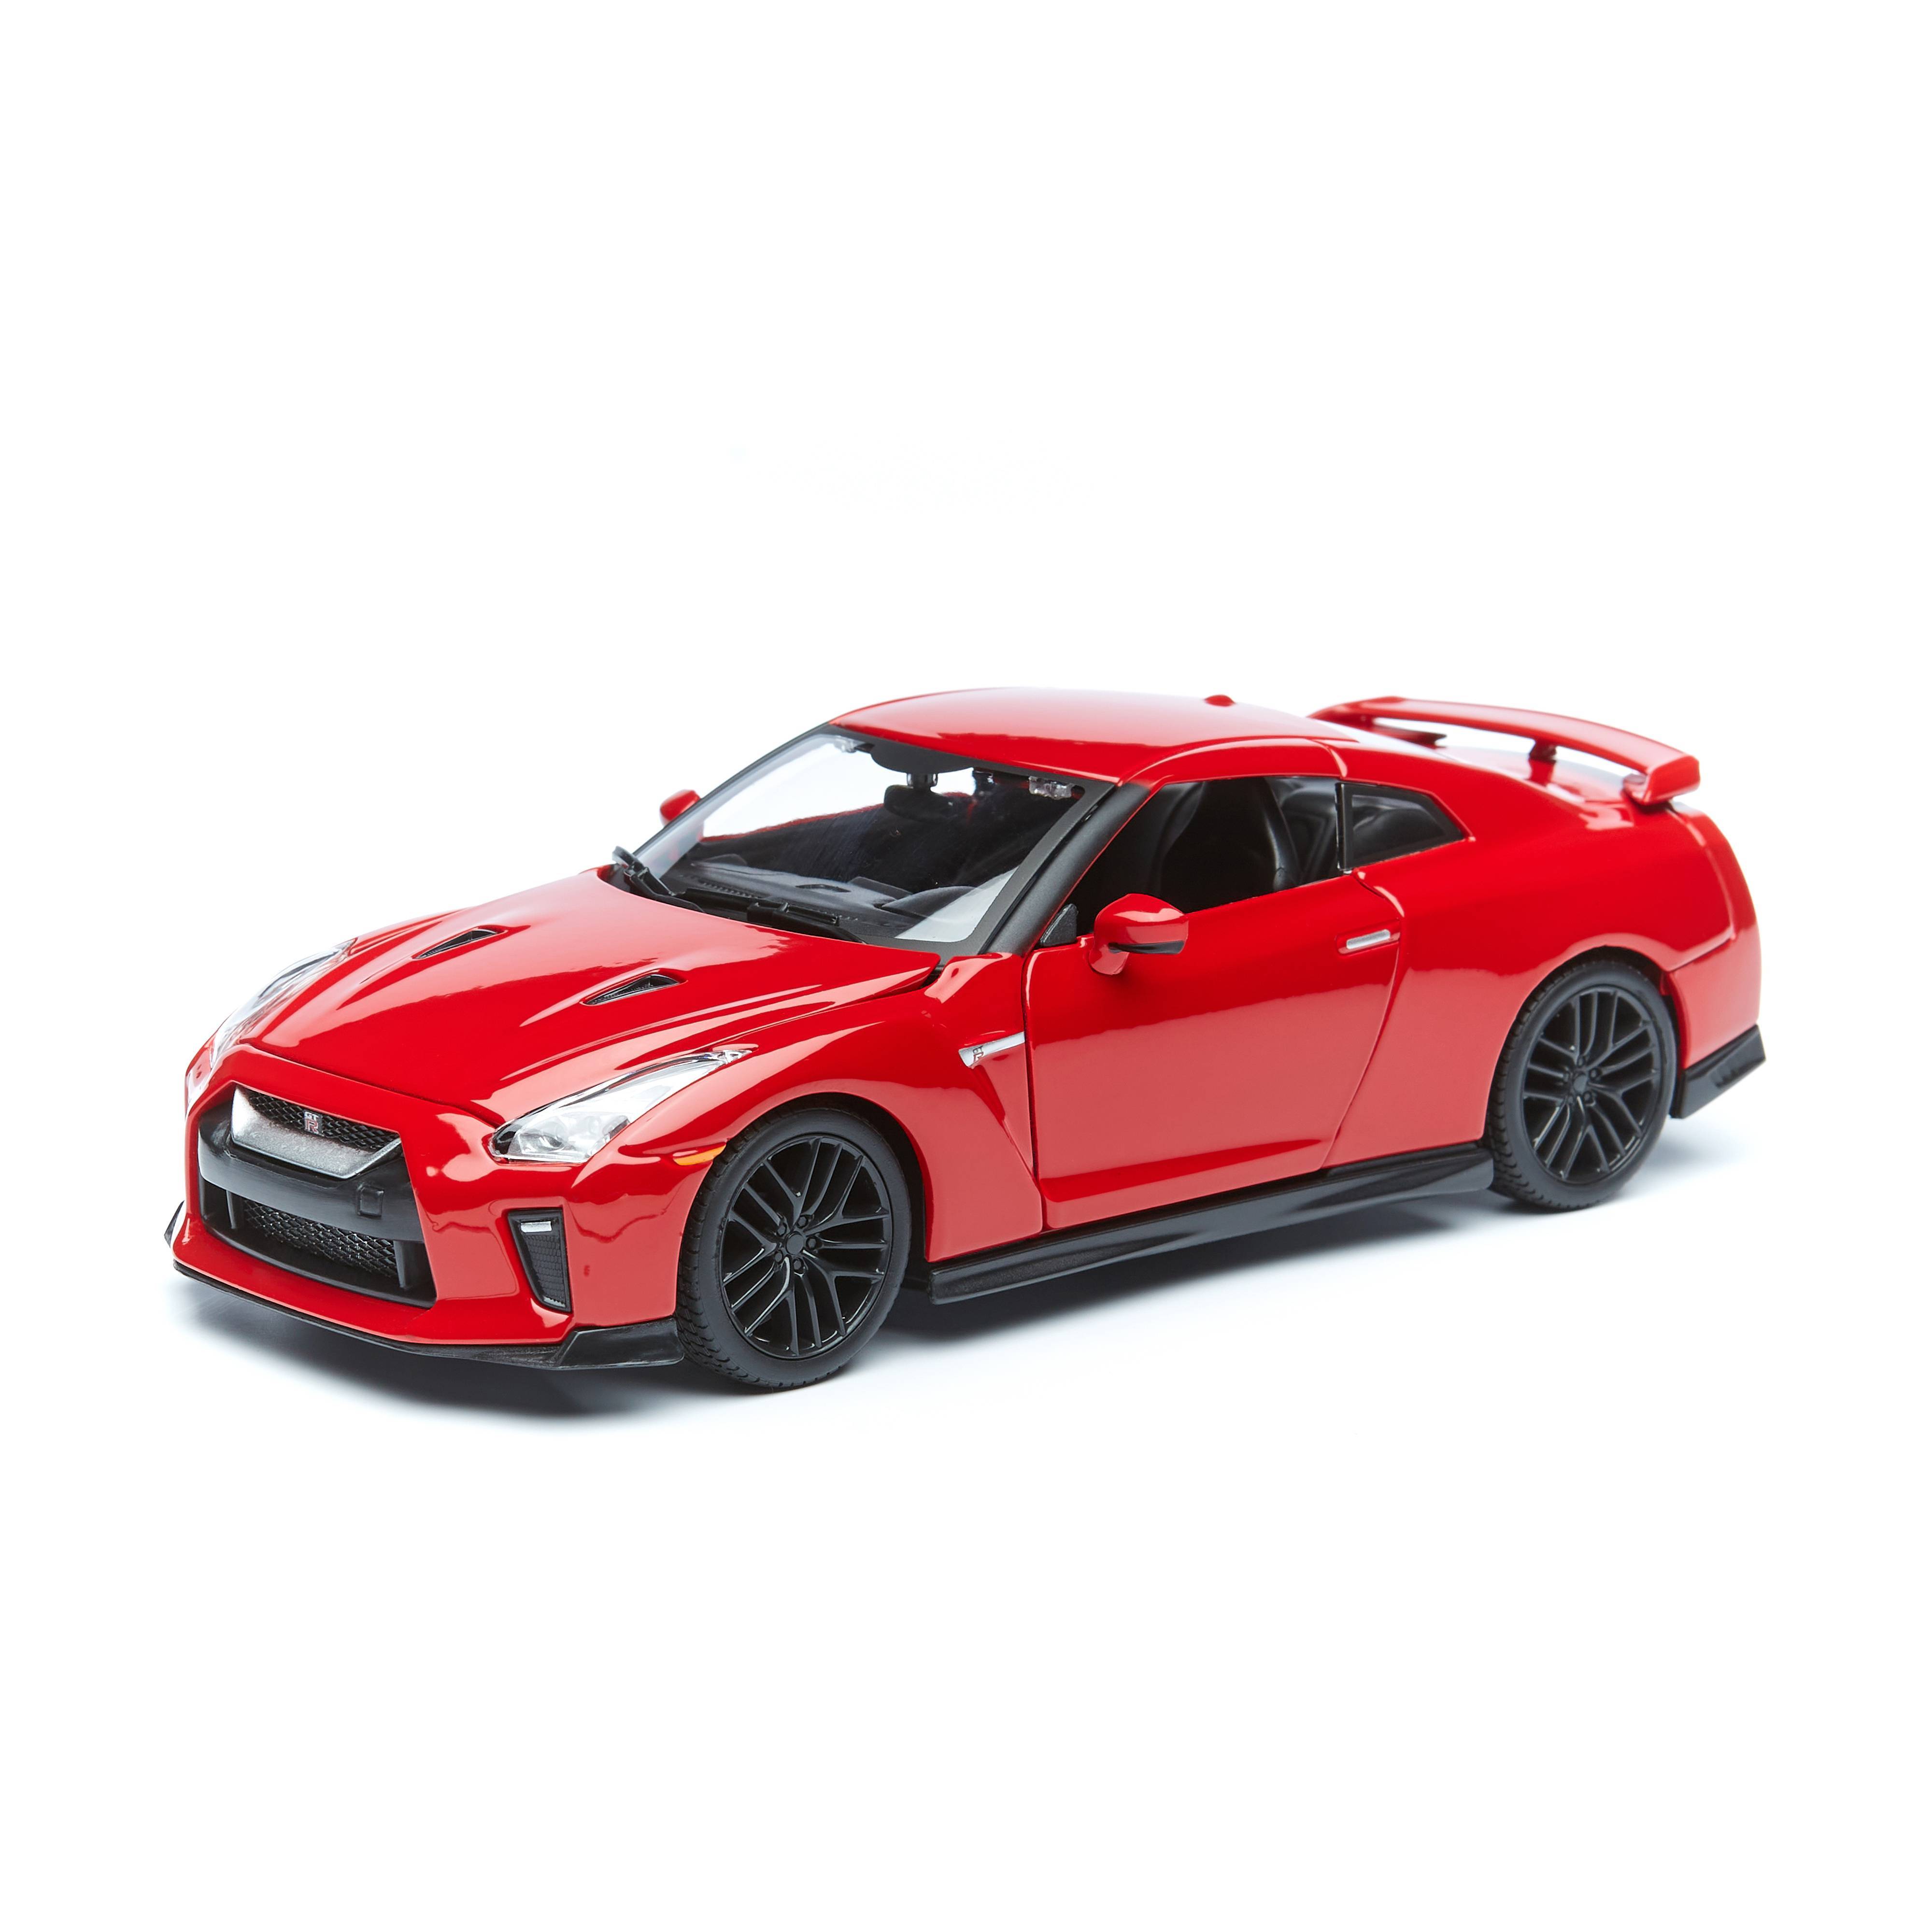 Машинка металлическая Bburago 2017 Nissan GT-R, 1:24, красный игрушечная машинка bburago металлическая 1 32 2020 mustang shelby gt500 18 43000